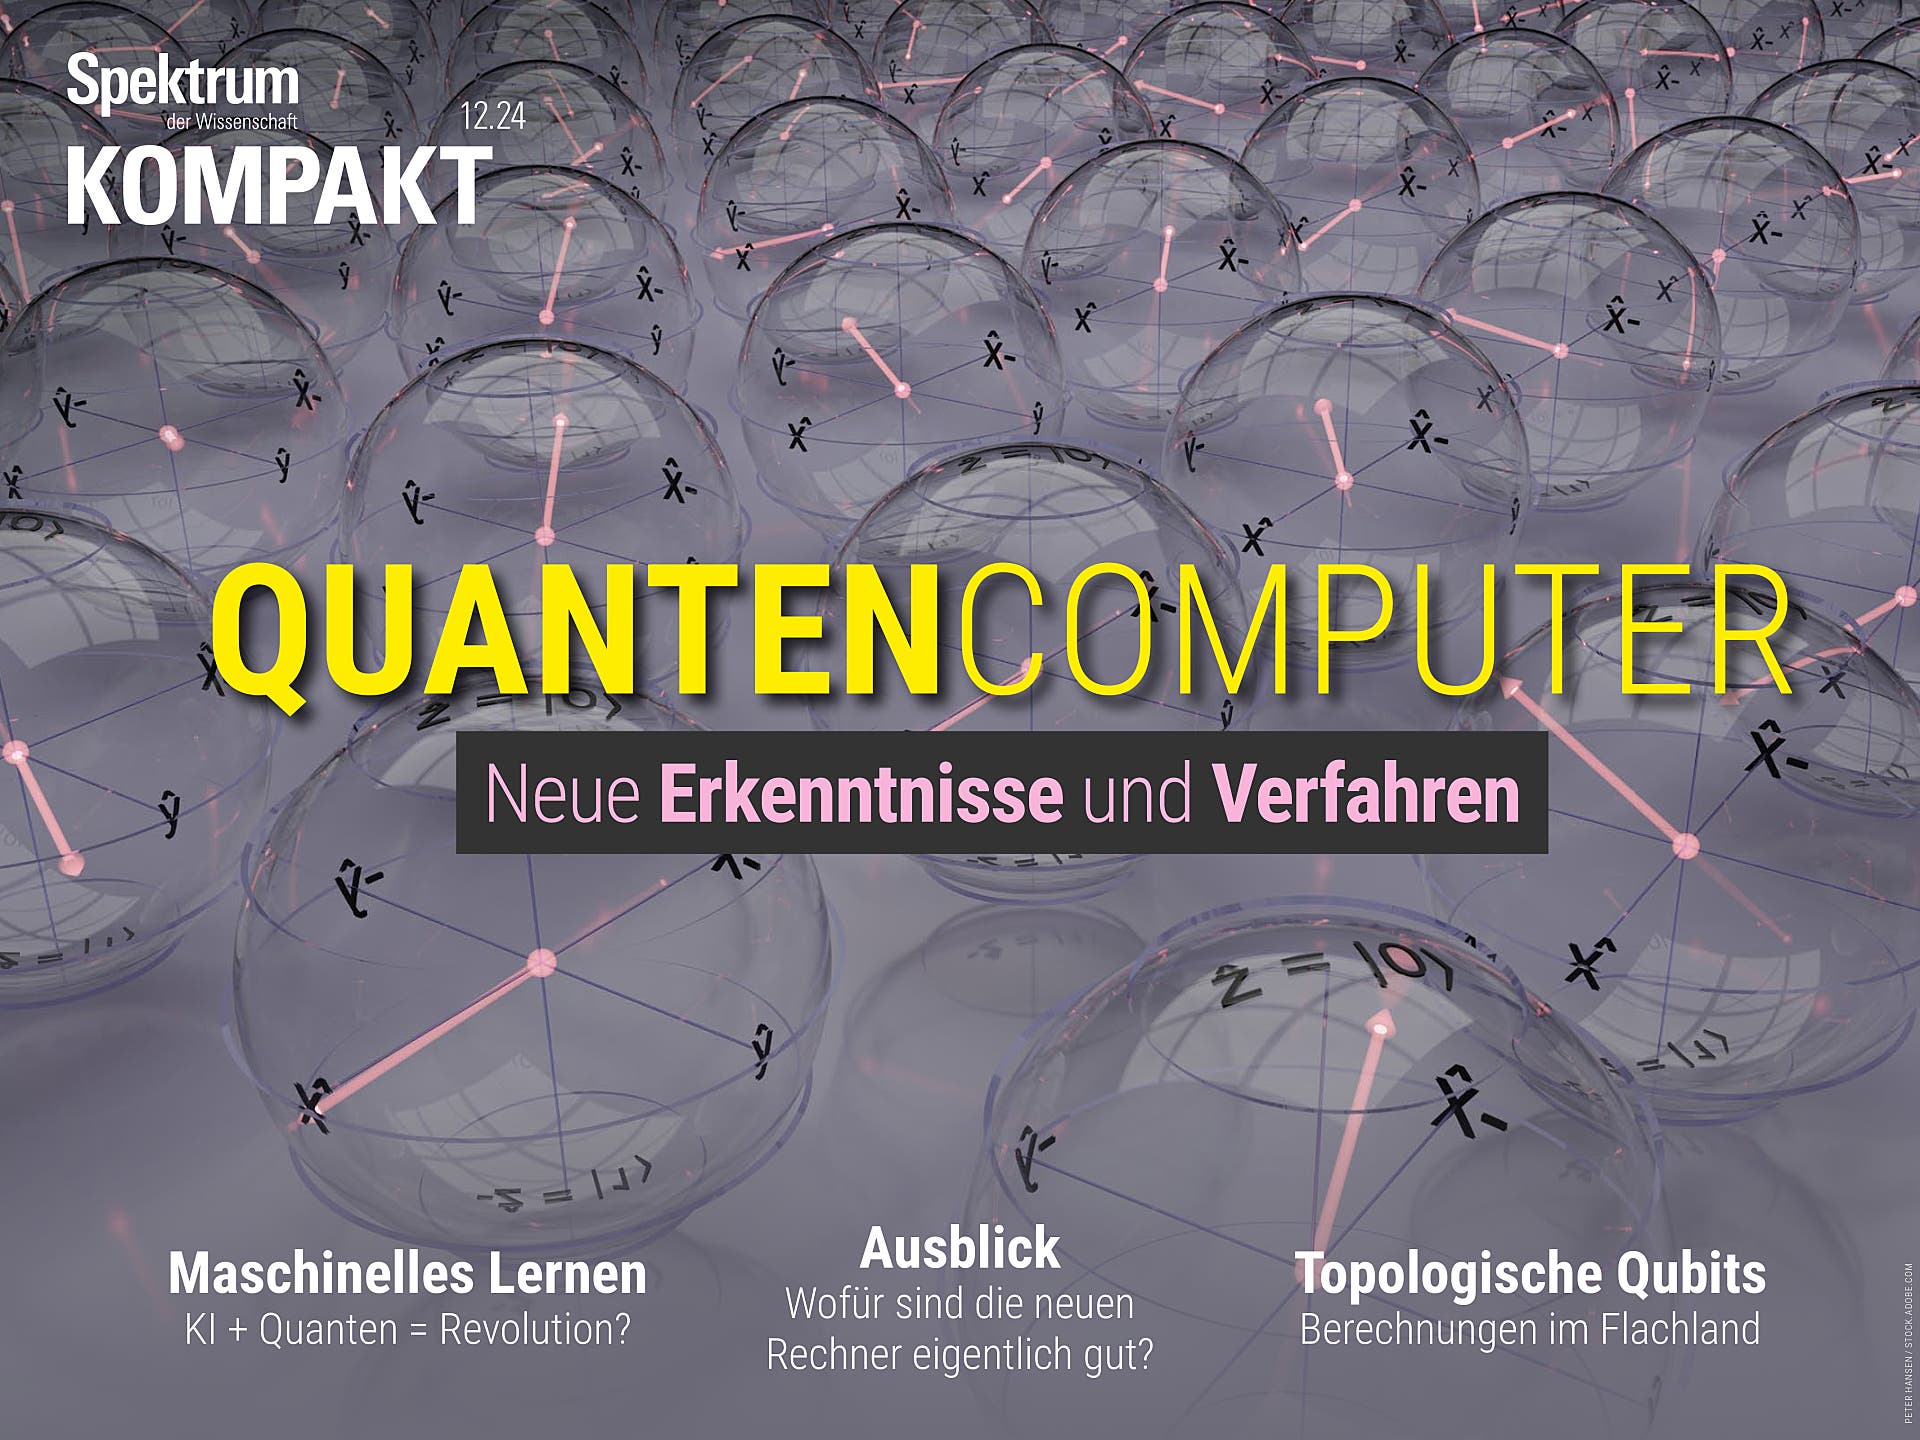 Quantencomputer - Neue Erkenntnisse und Verfahren